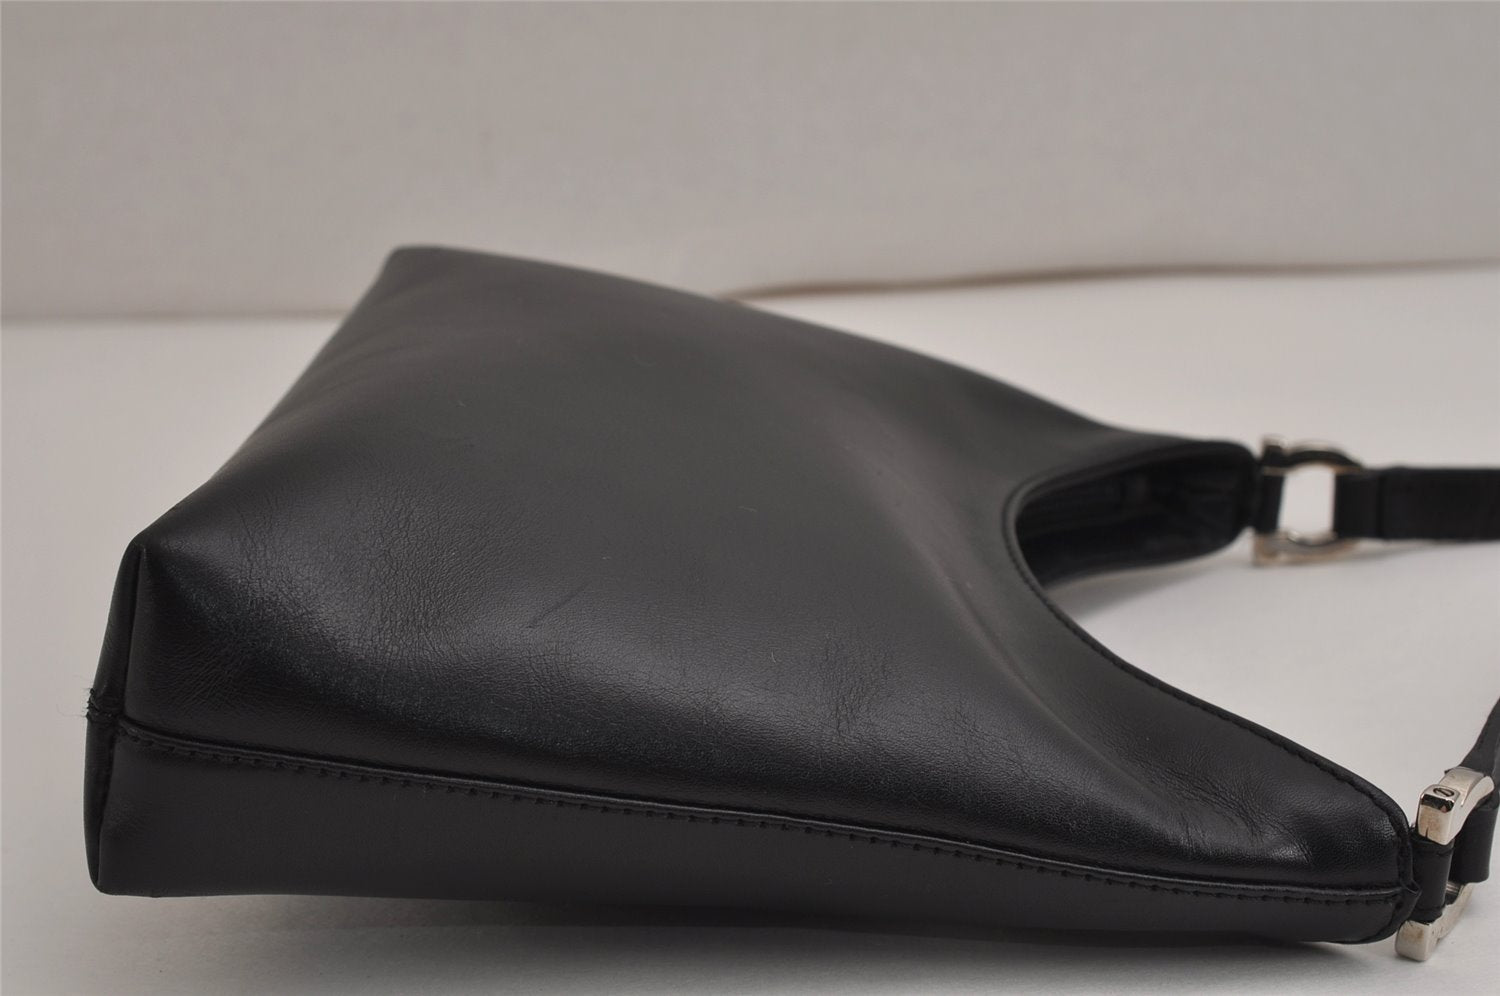 Authentic Salvatore Ferragamo Vintage Leather Shoulder Bag Purse Black 9824J